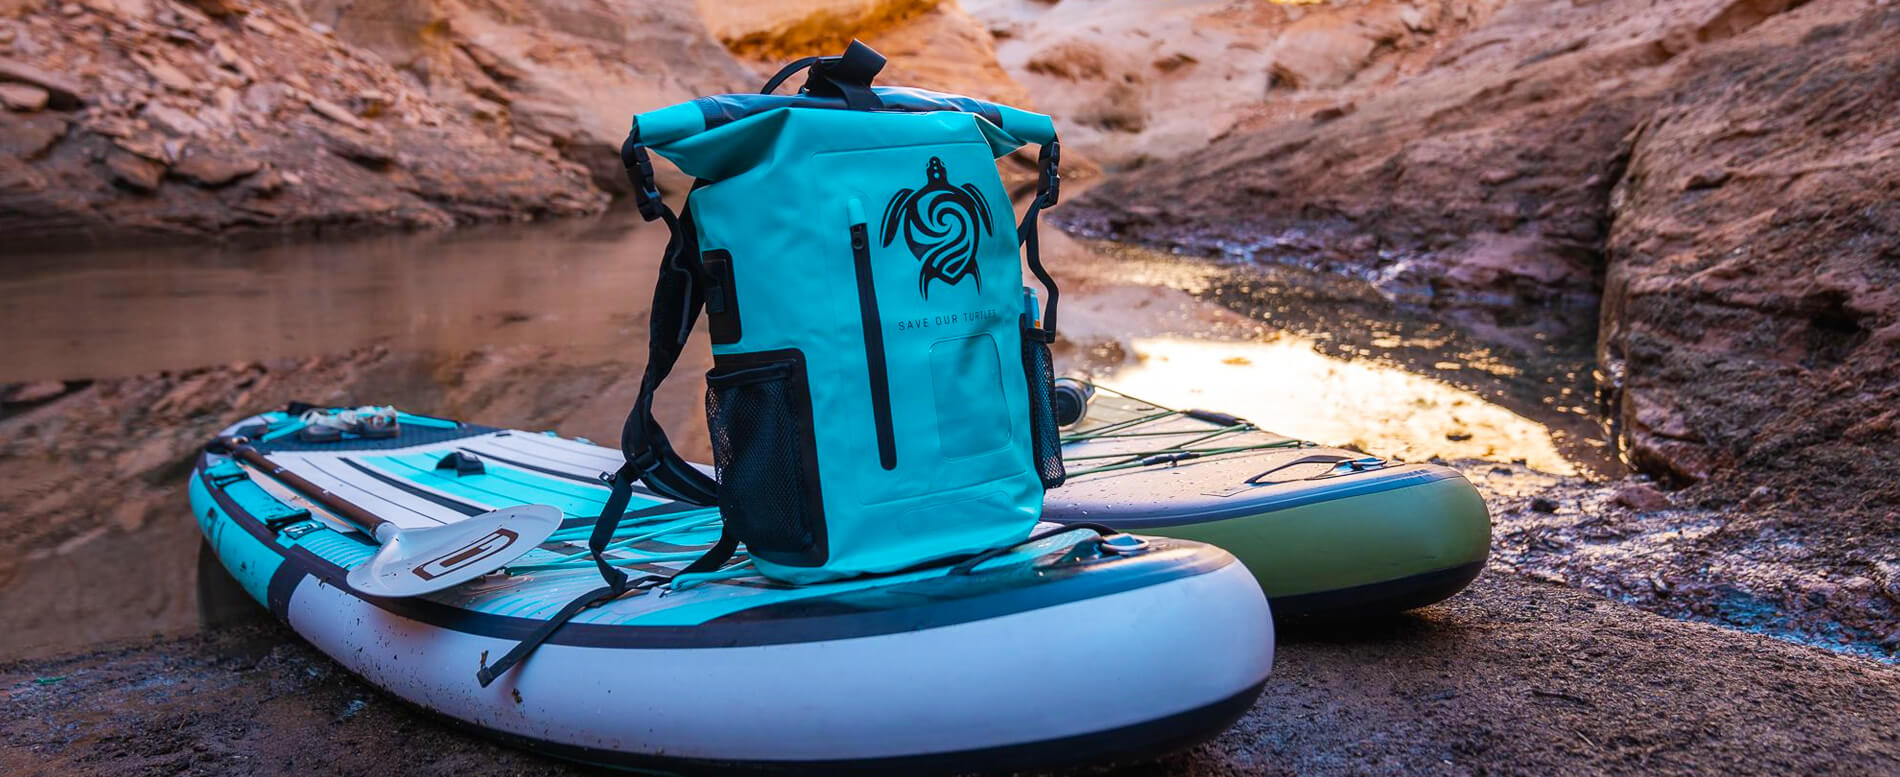 GILI waterproof backpack on a GILI board